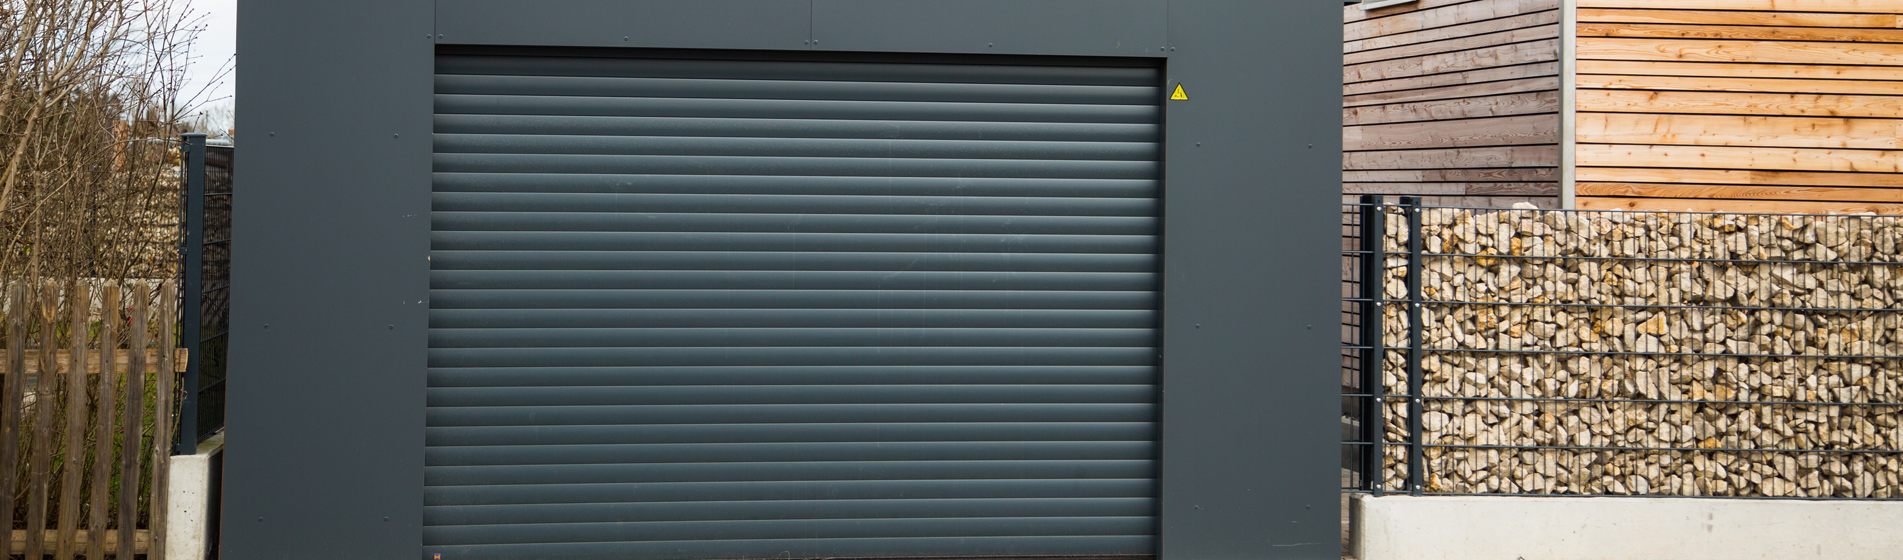 fabricant porte de garage aluminium 13750